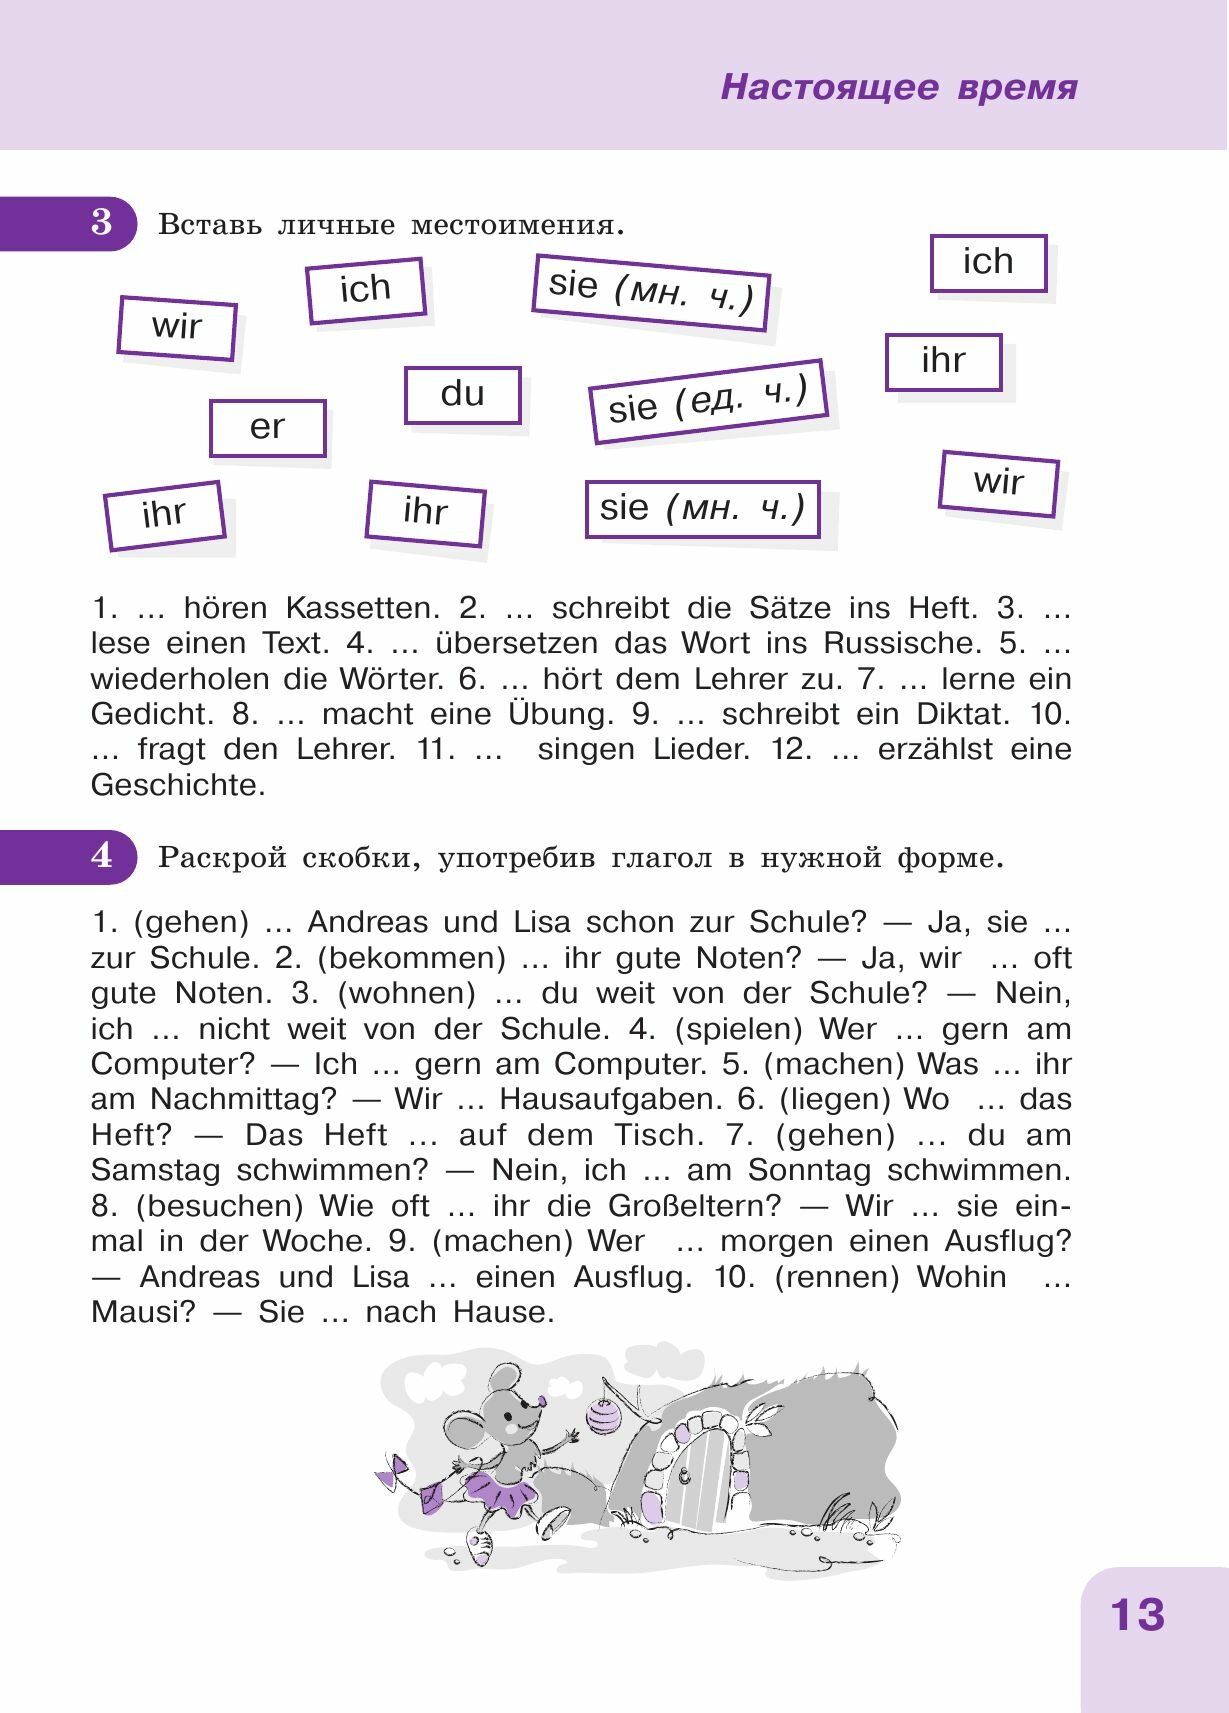 Немецкий язык: время грамматики. Пособие для эффективного изучения и тренировки грамматики - фото №7